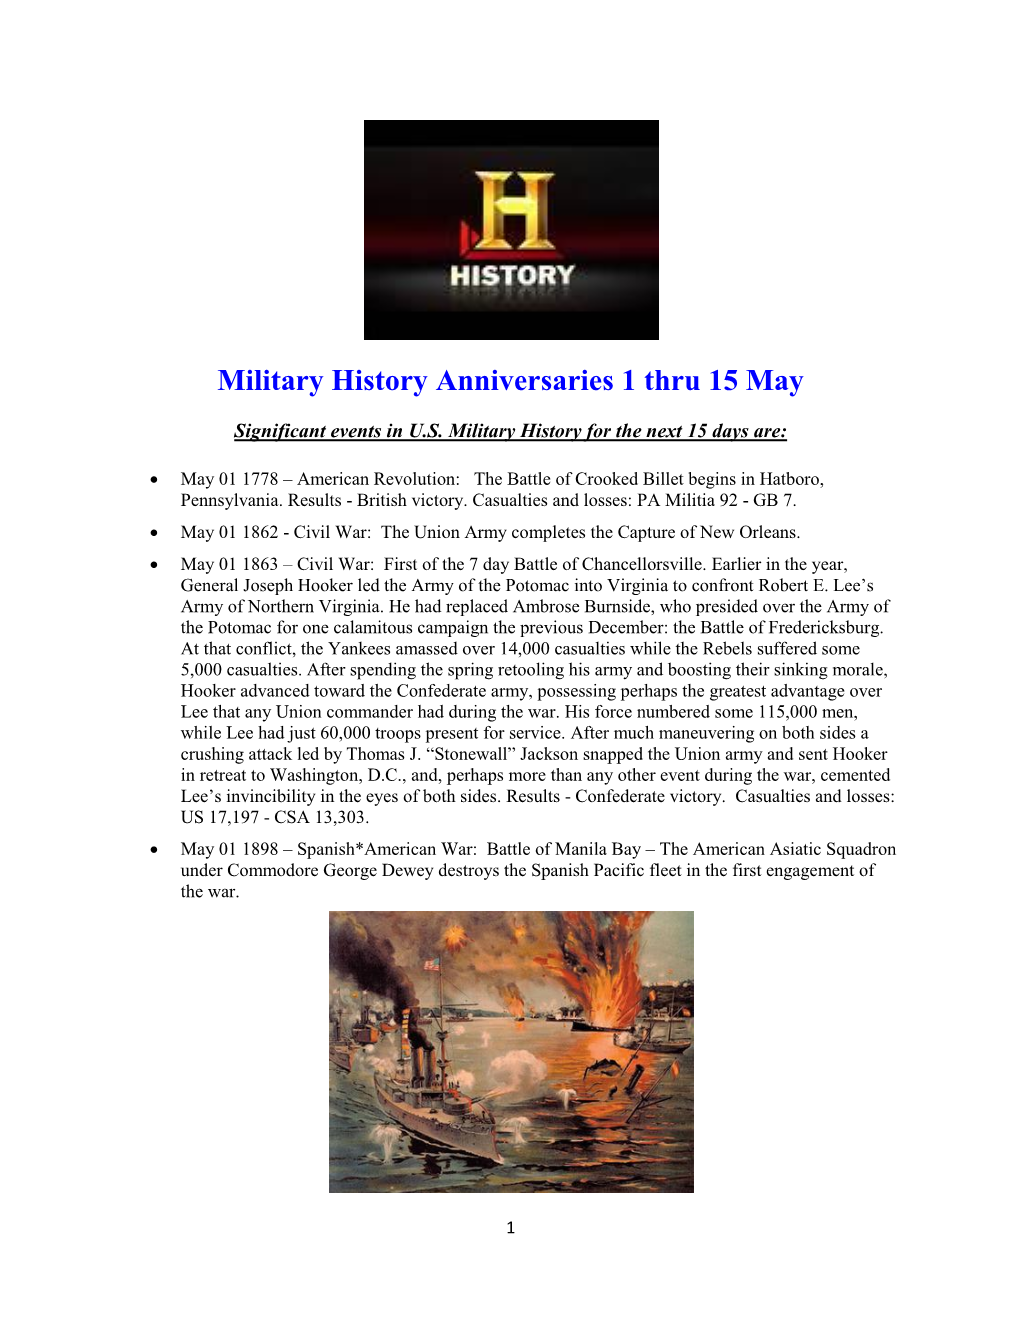 Military History Anniversaries 0501 Thru 051516